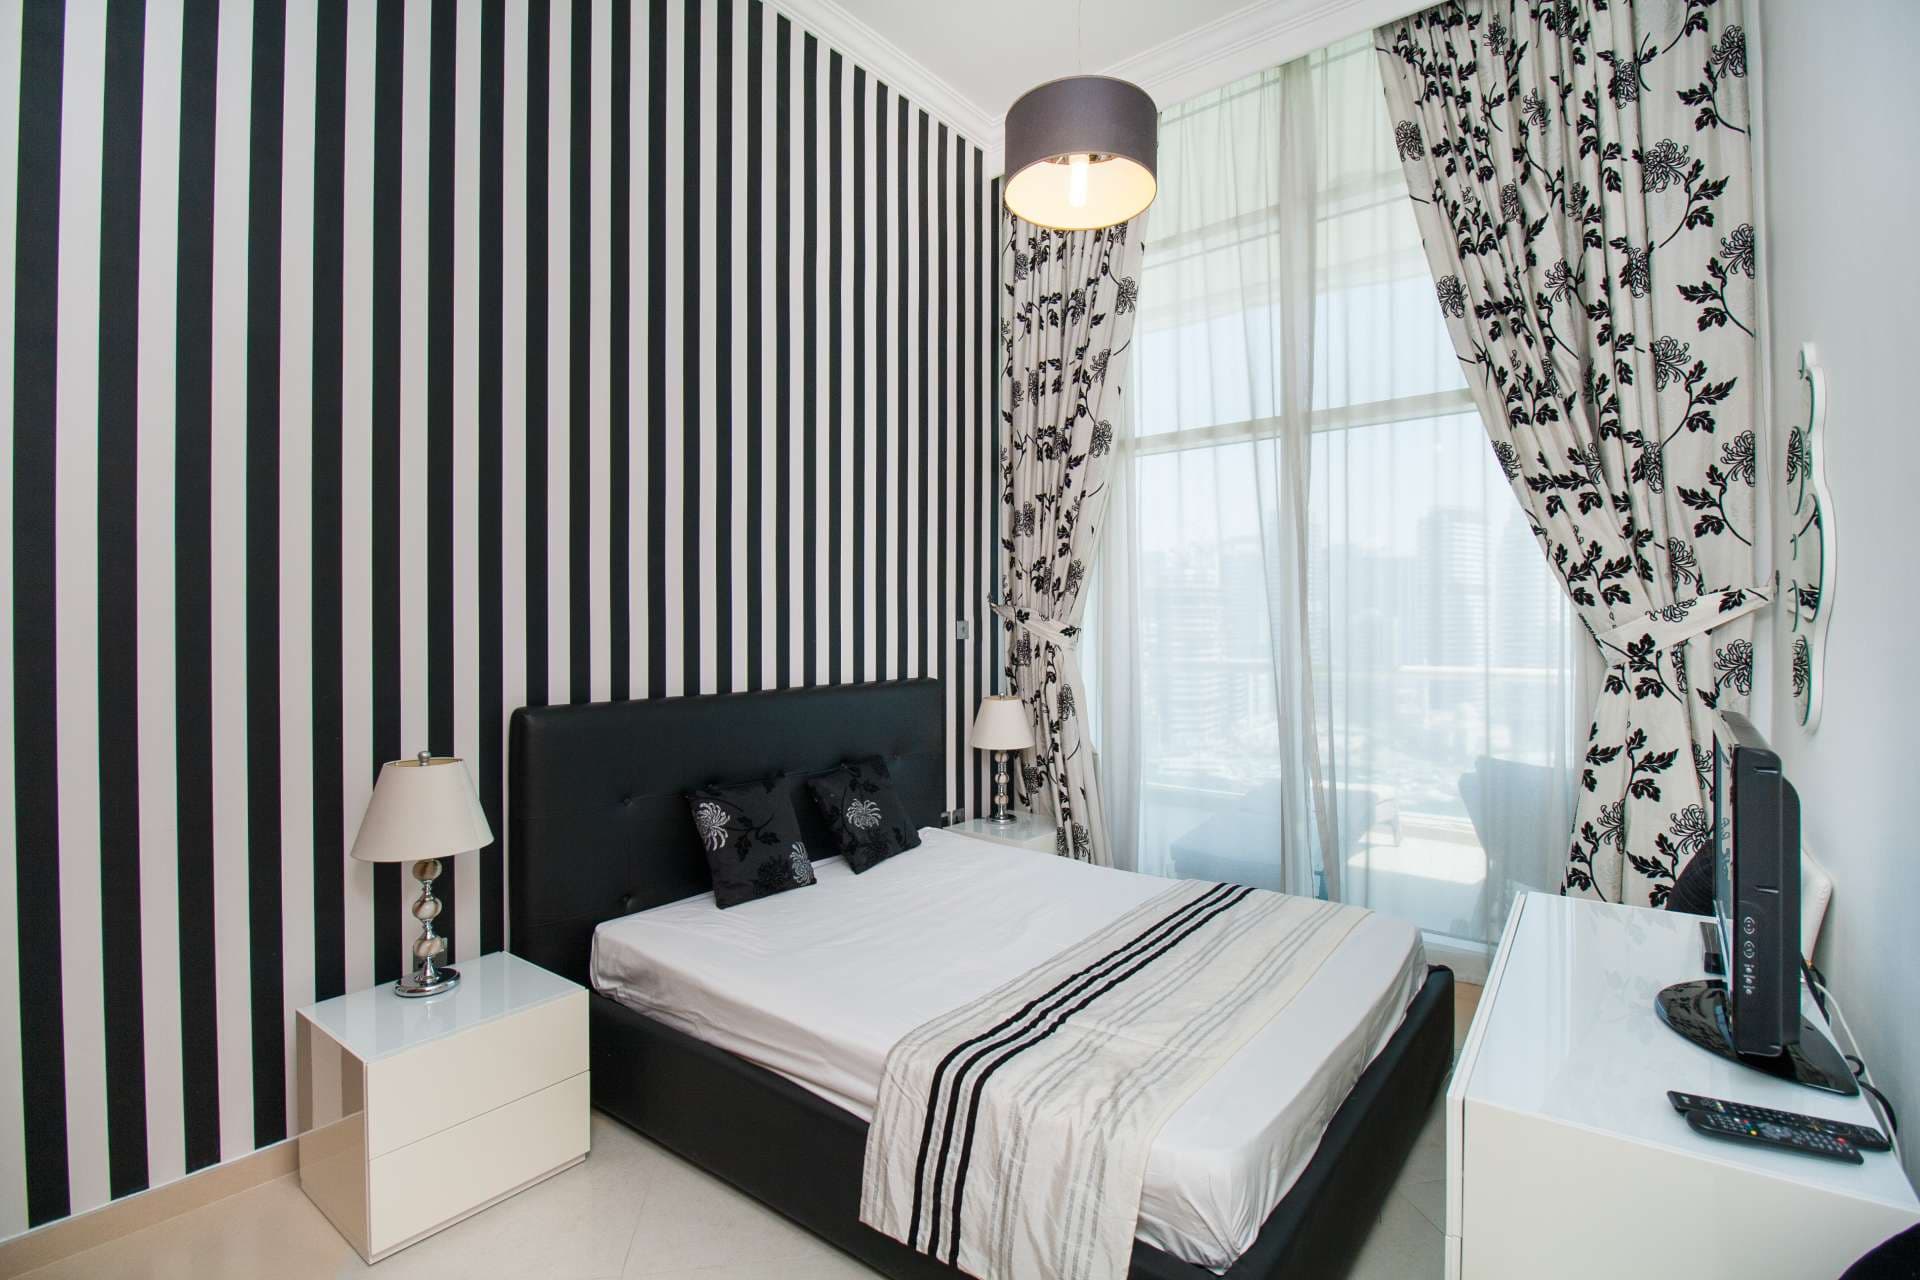 2 Bedroom Apartment For Rent Dorra Bay Lp04869 2101af19504c4200.jpg